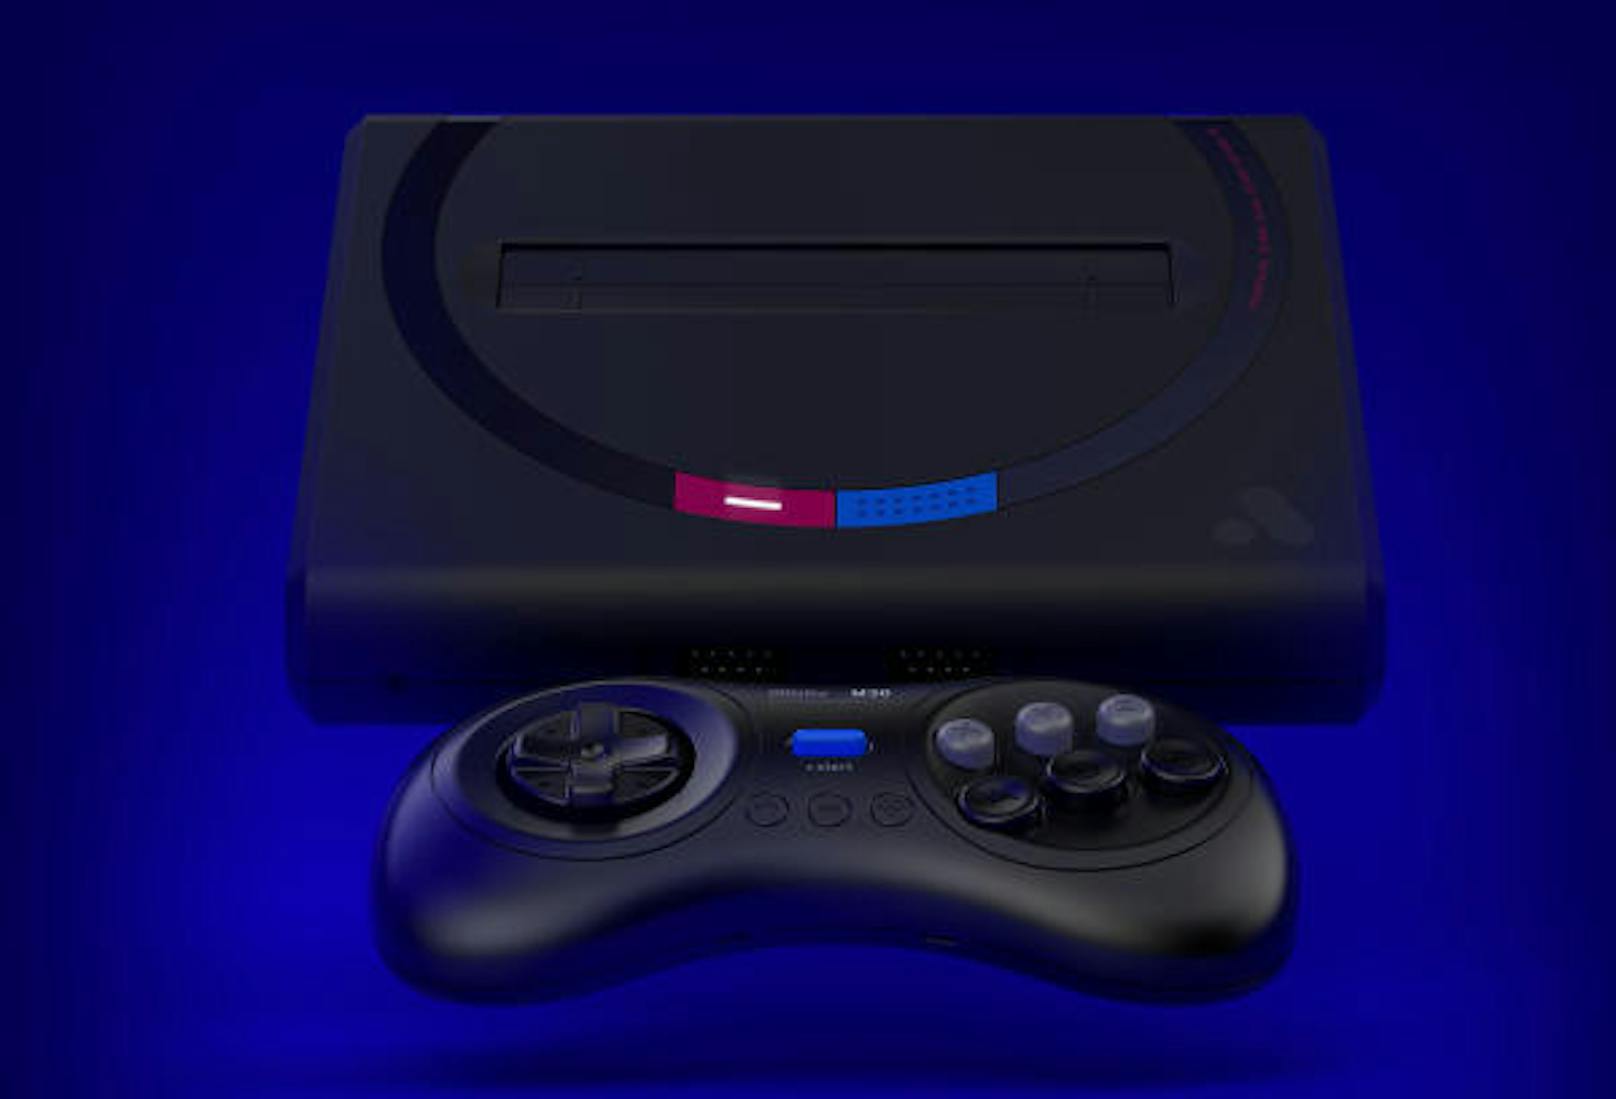 Vor 30 Jahren kam die erste Sega Genesis auf den Markt. Jetzt gibt es für die Retro-Konsole eine Art Comeback. Die Mega Sg ist eine HDMI-fähige Neuauflage, mit der die alten Cartridges gespielt werden können. Die Konsole wird mit Wireless-Controllern geliefert. Dafür verantwortlich ist das Unternehmen Analogue, das schon zuvor modernisierte Versionen der NES- und SNES-Konsolen entwickelt hatte. Die Mega Sg unterstützt Spiele für Genesis/Mega Drive, Sega Master sowie für die Game Gear und die Sega-Systeme SG-1000, SC-3000 und Mark III. Auch die ersten CD-ROM-Spiele von Sega können auf der neuen Konsole gezockt werden. Die Mega Sg gibt es für 189 Dollar und kann bereits vorbestellt werden. Geliefert werden soll diese jedoch erst im April 2019.